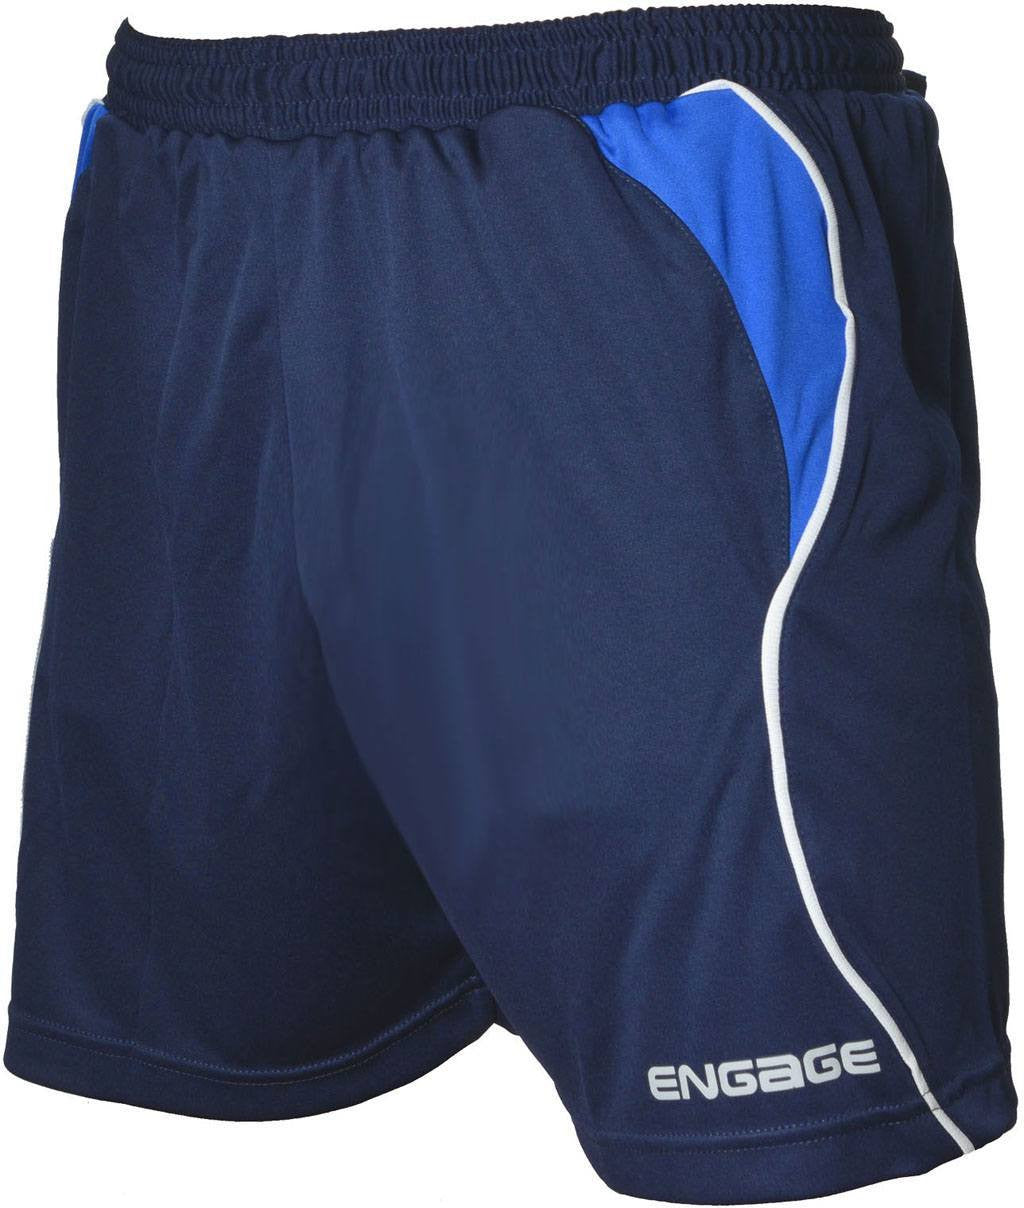 Football Shorts, Soccer Shorts, Engage Football Shorts - Navy/Royal ...